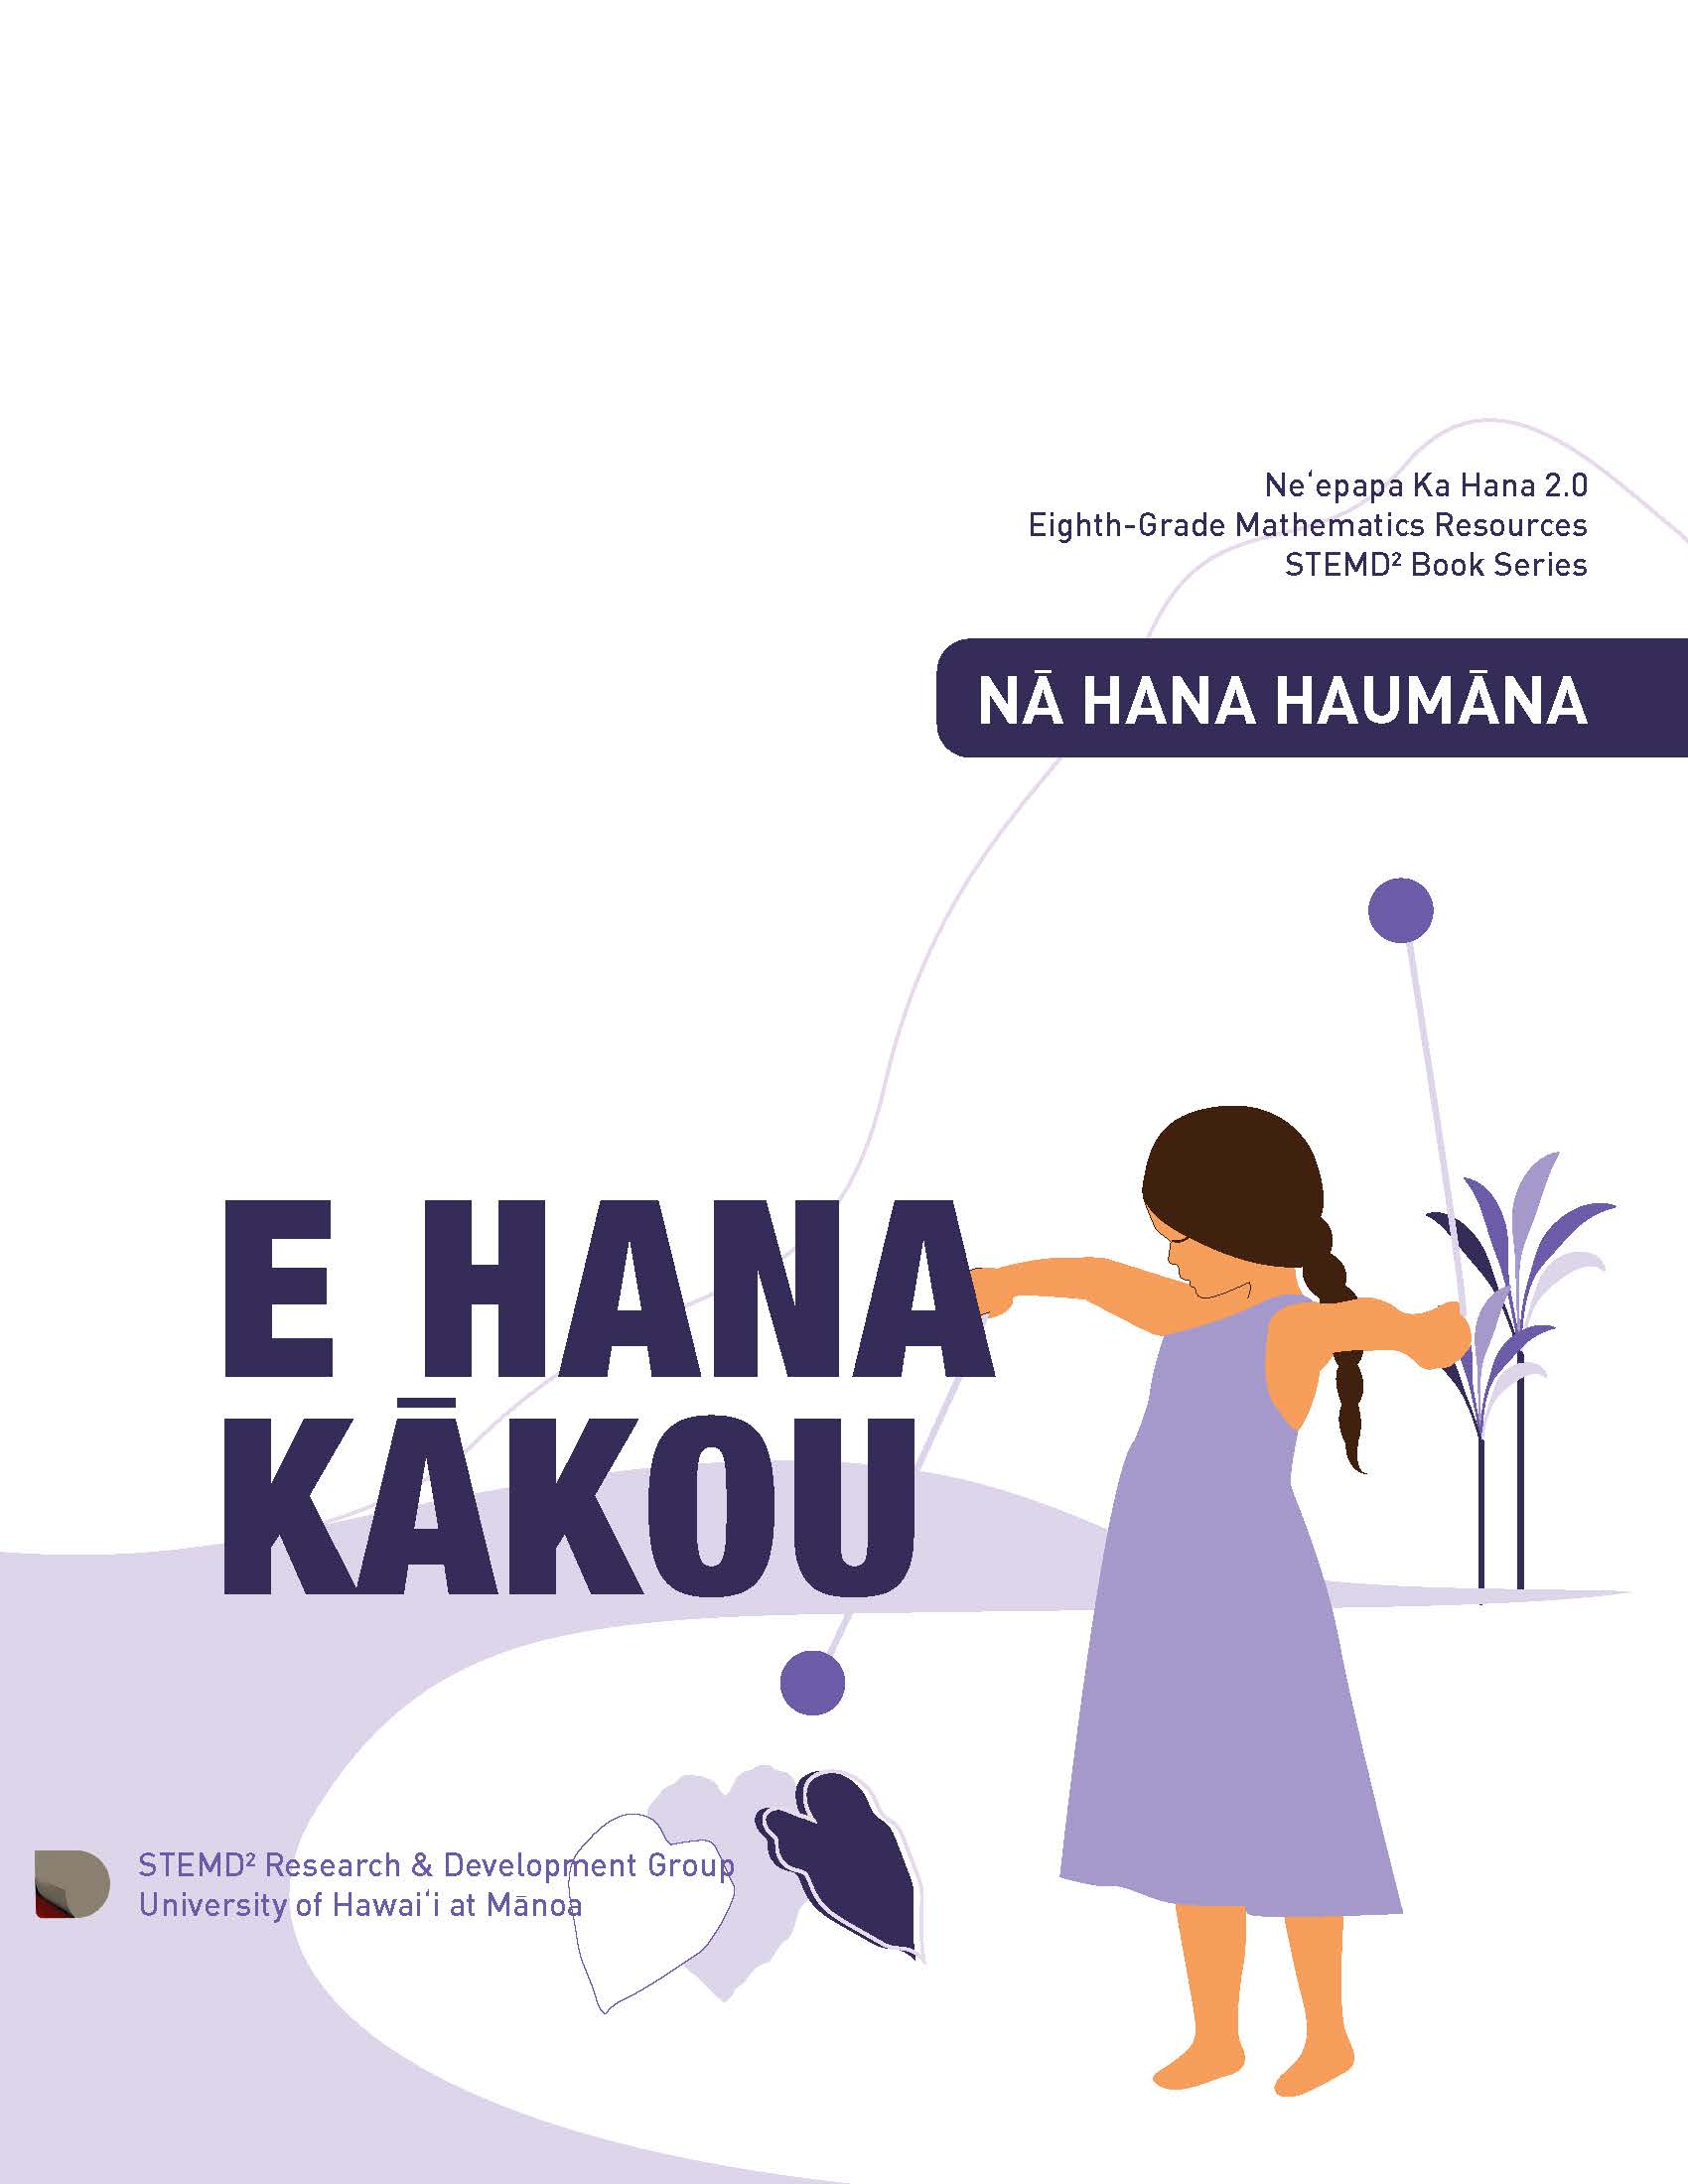 the cover of the 8th grade E hana kākou student book.